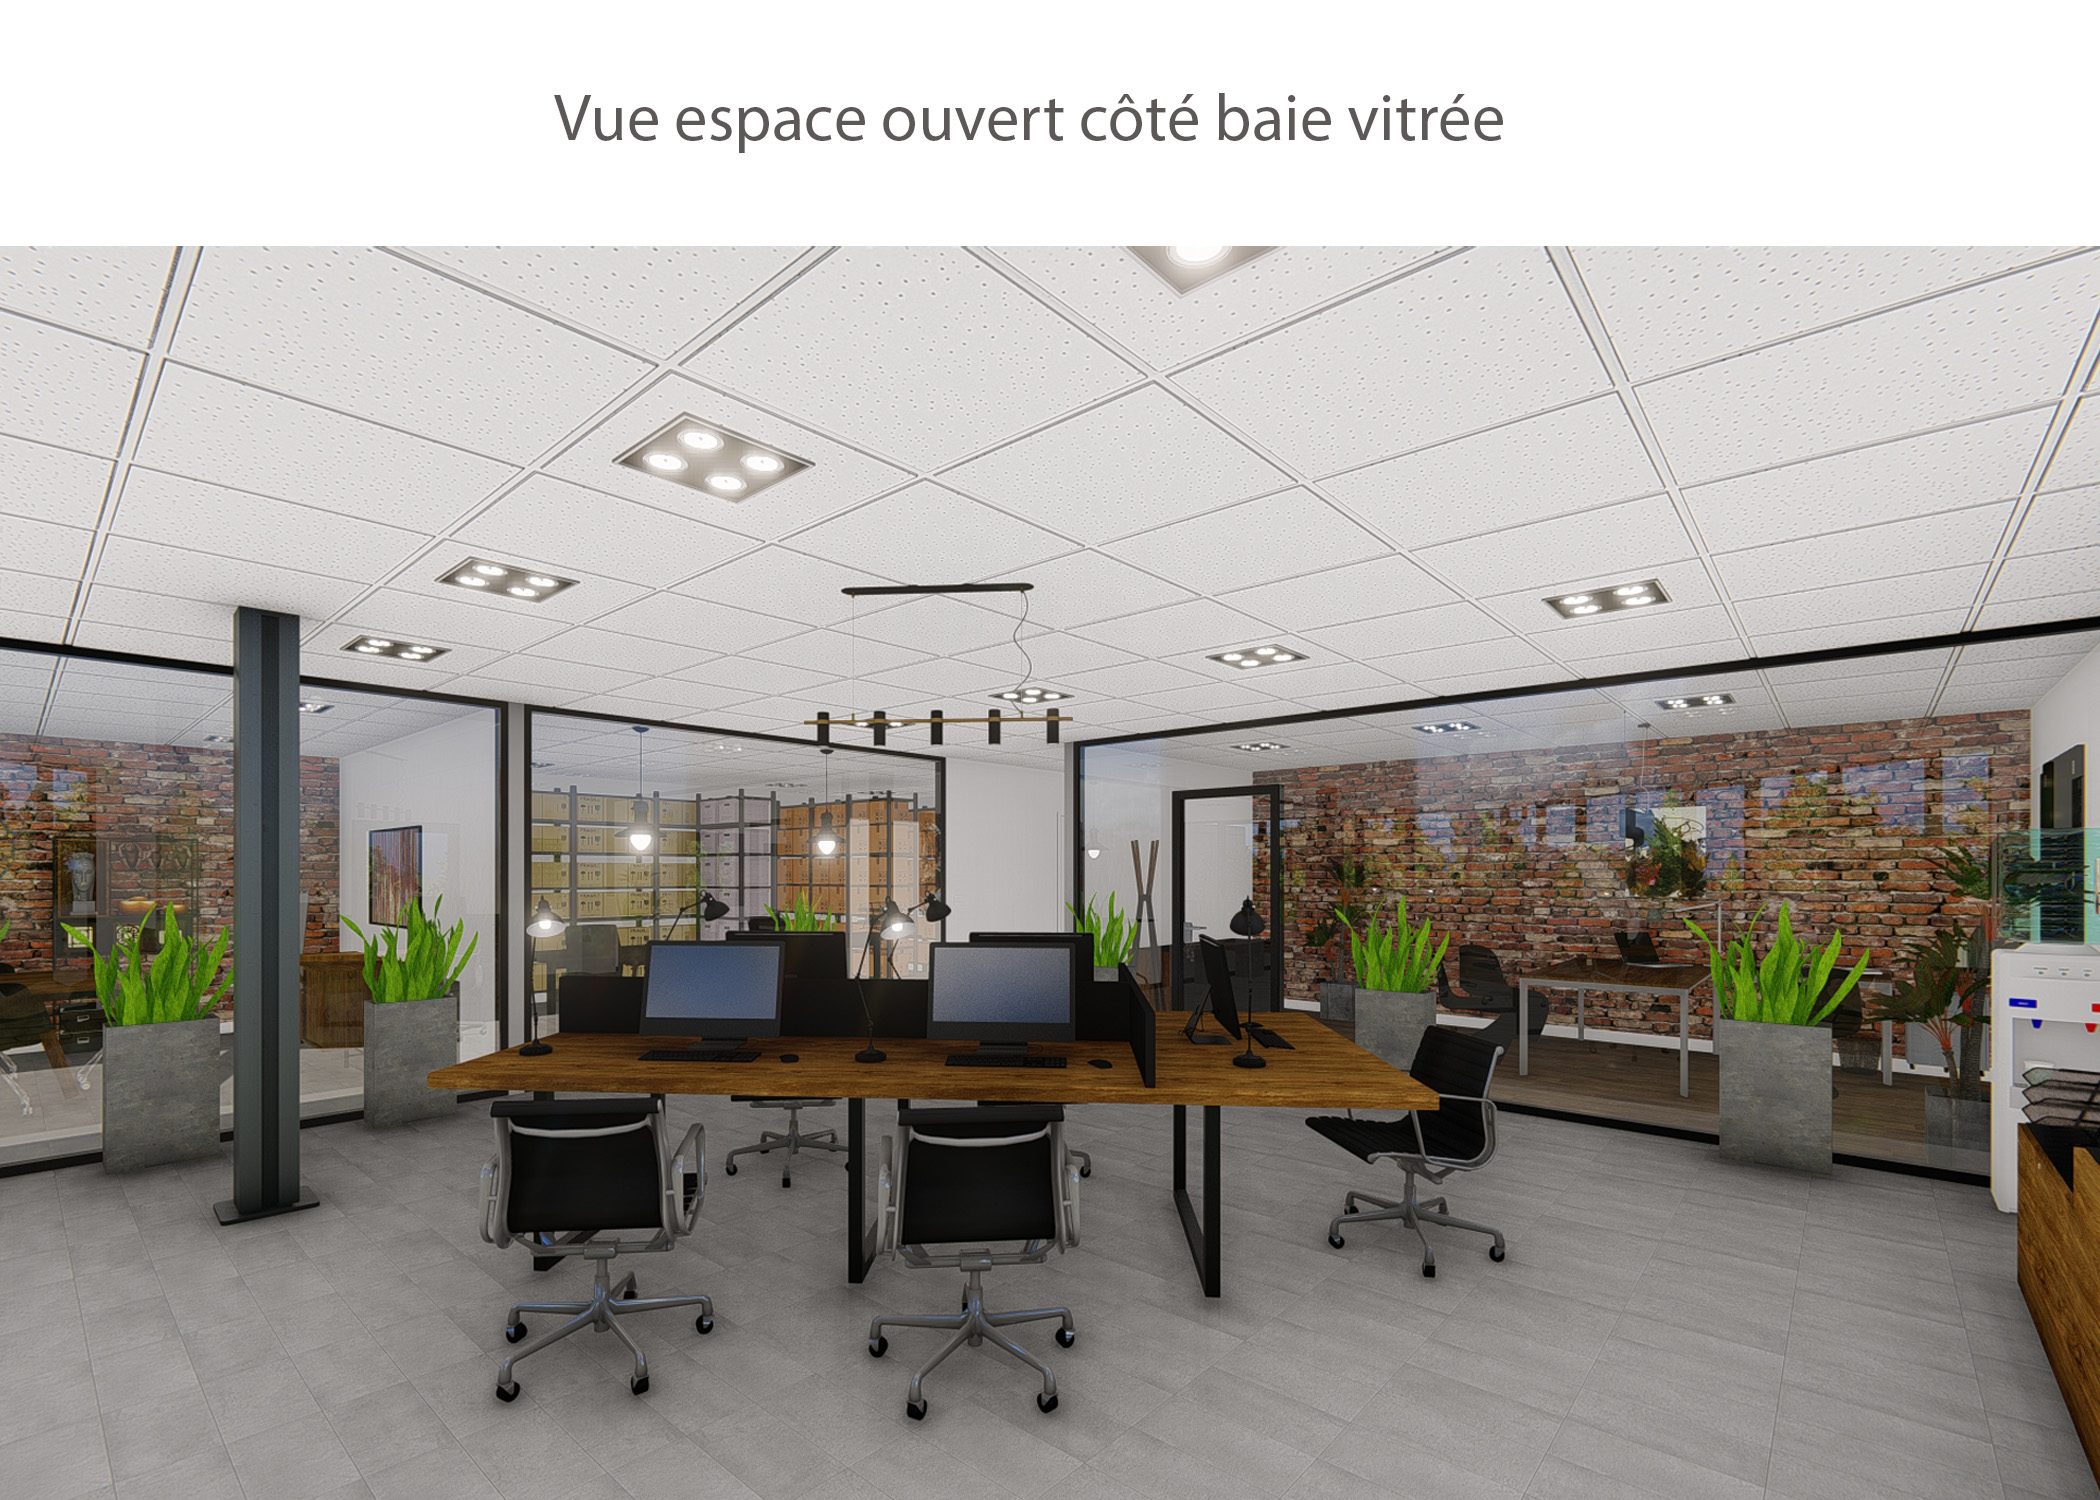 amenagement-decoration-start-up vente en ligne-region parisienne-espace ouvert cote baie vitree-dekho design